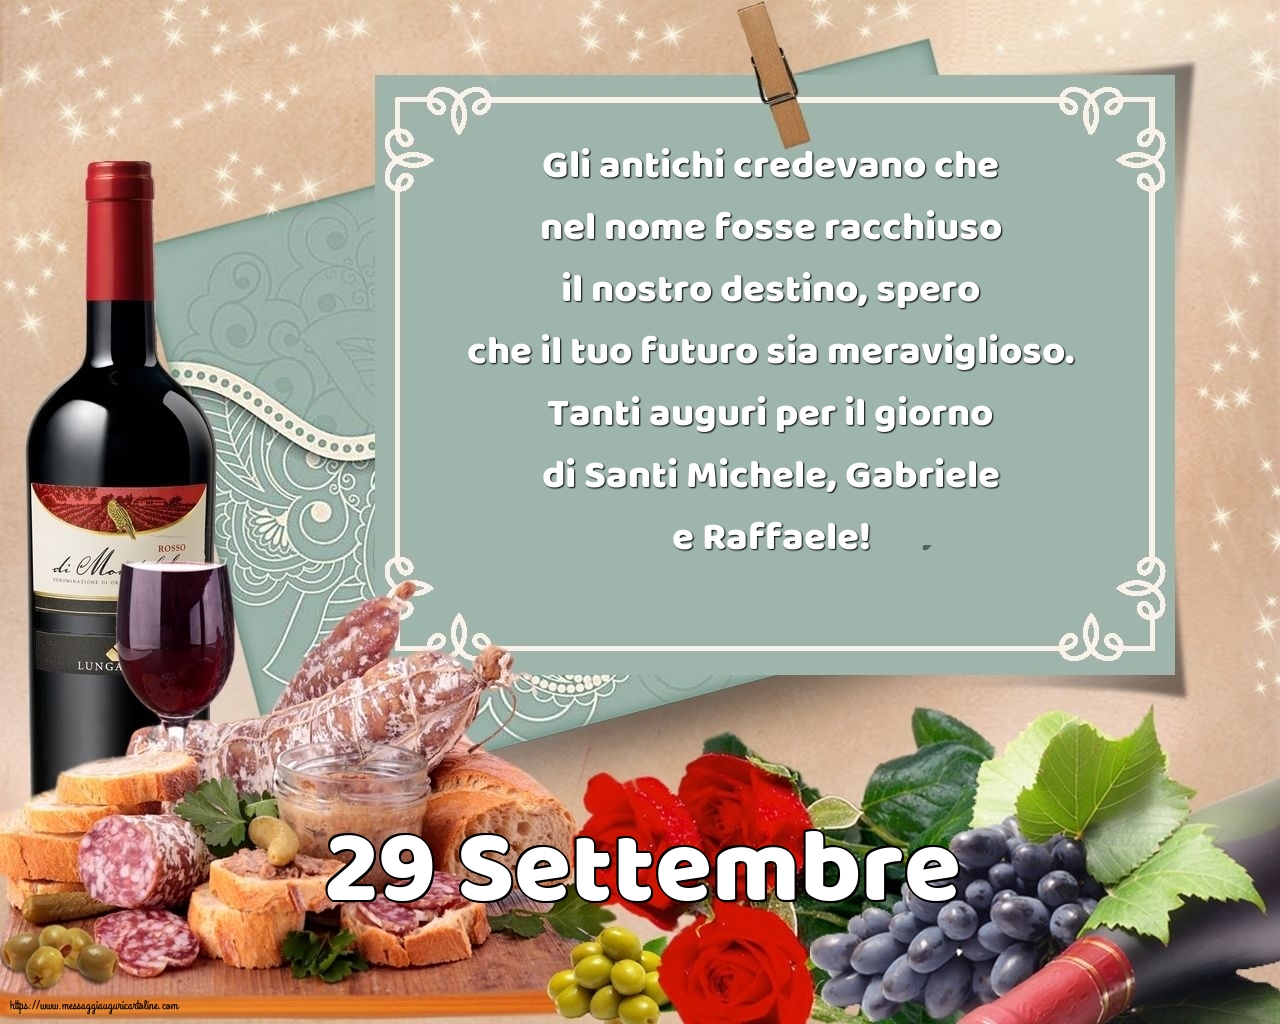 29 Settembre - 29 Settembre - Tanti auguri per il giorno di Santi Michele, Gabriele e Raffaele!